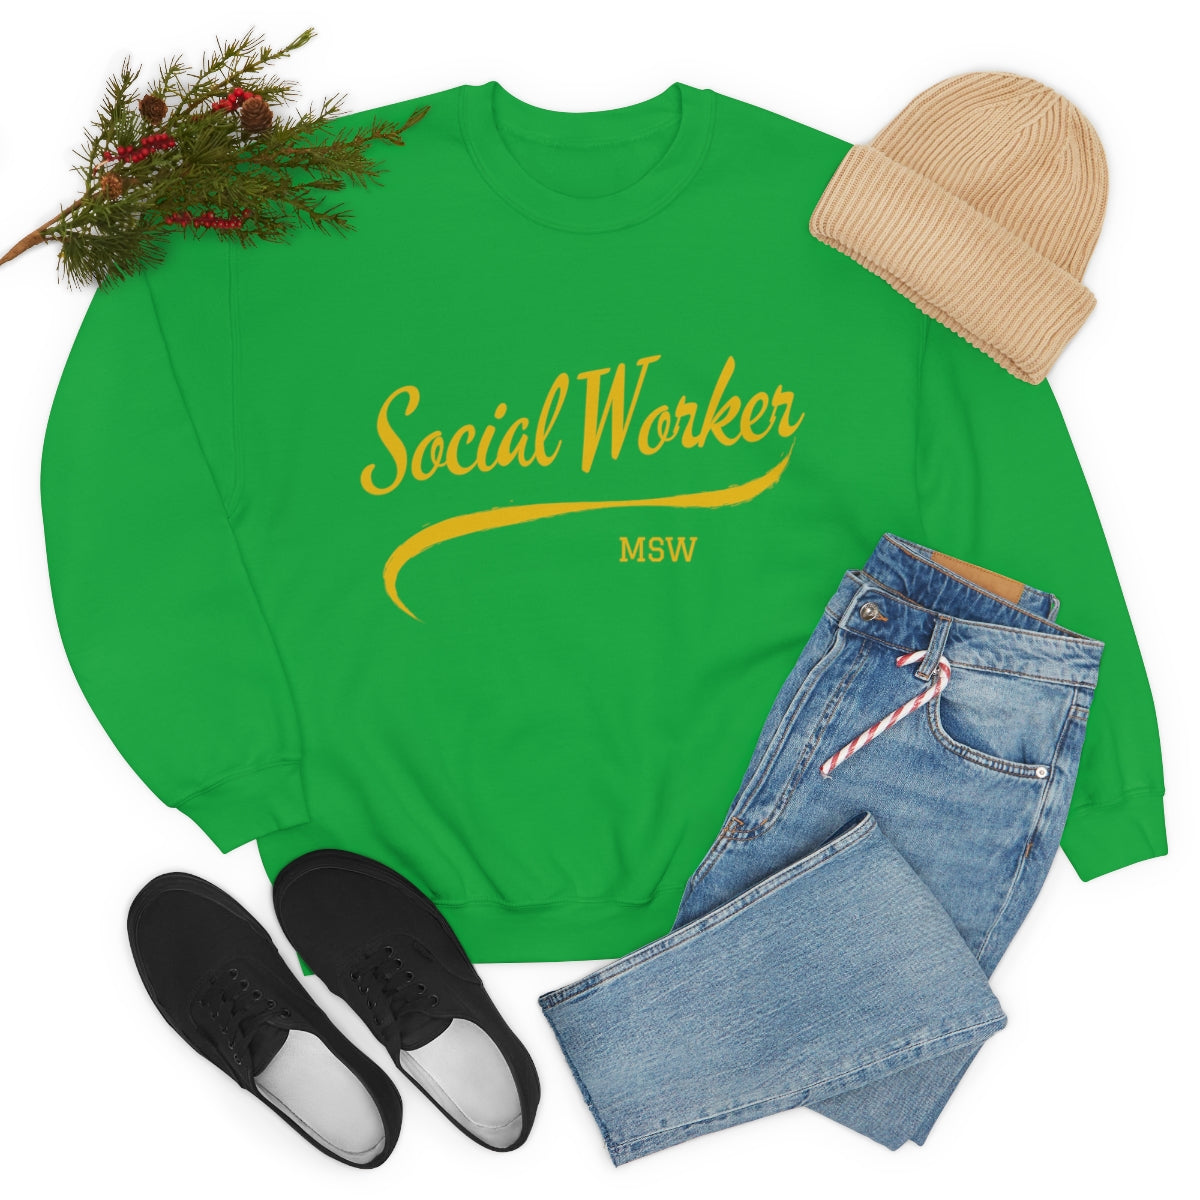 Social Worker MSW Crewneck